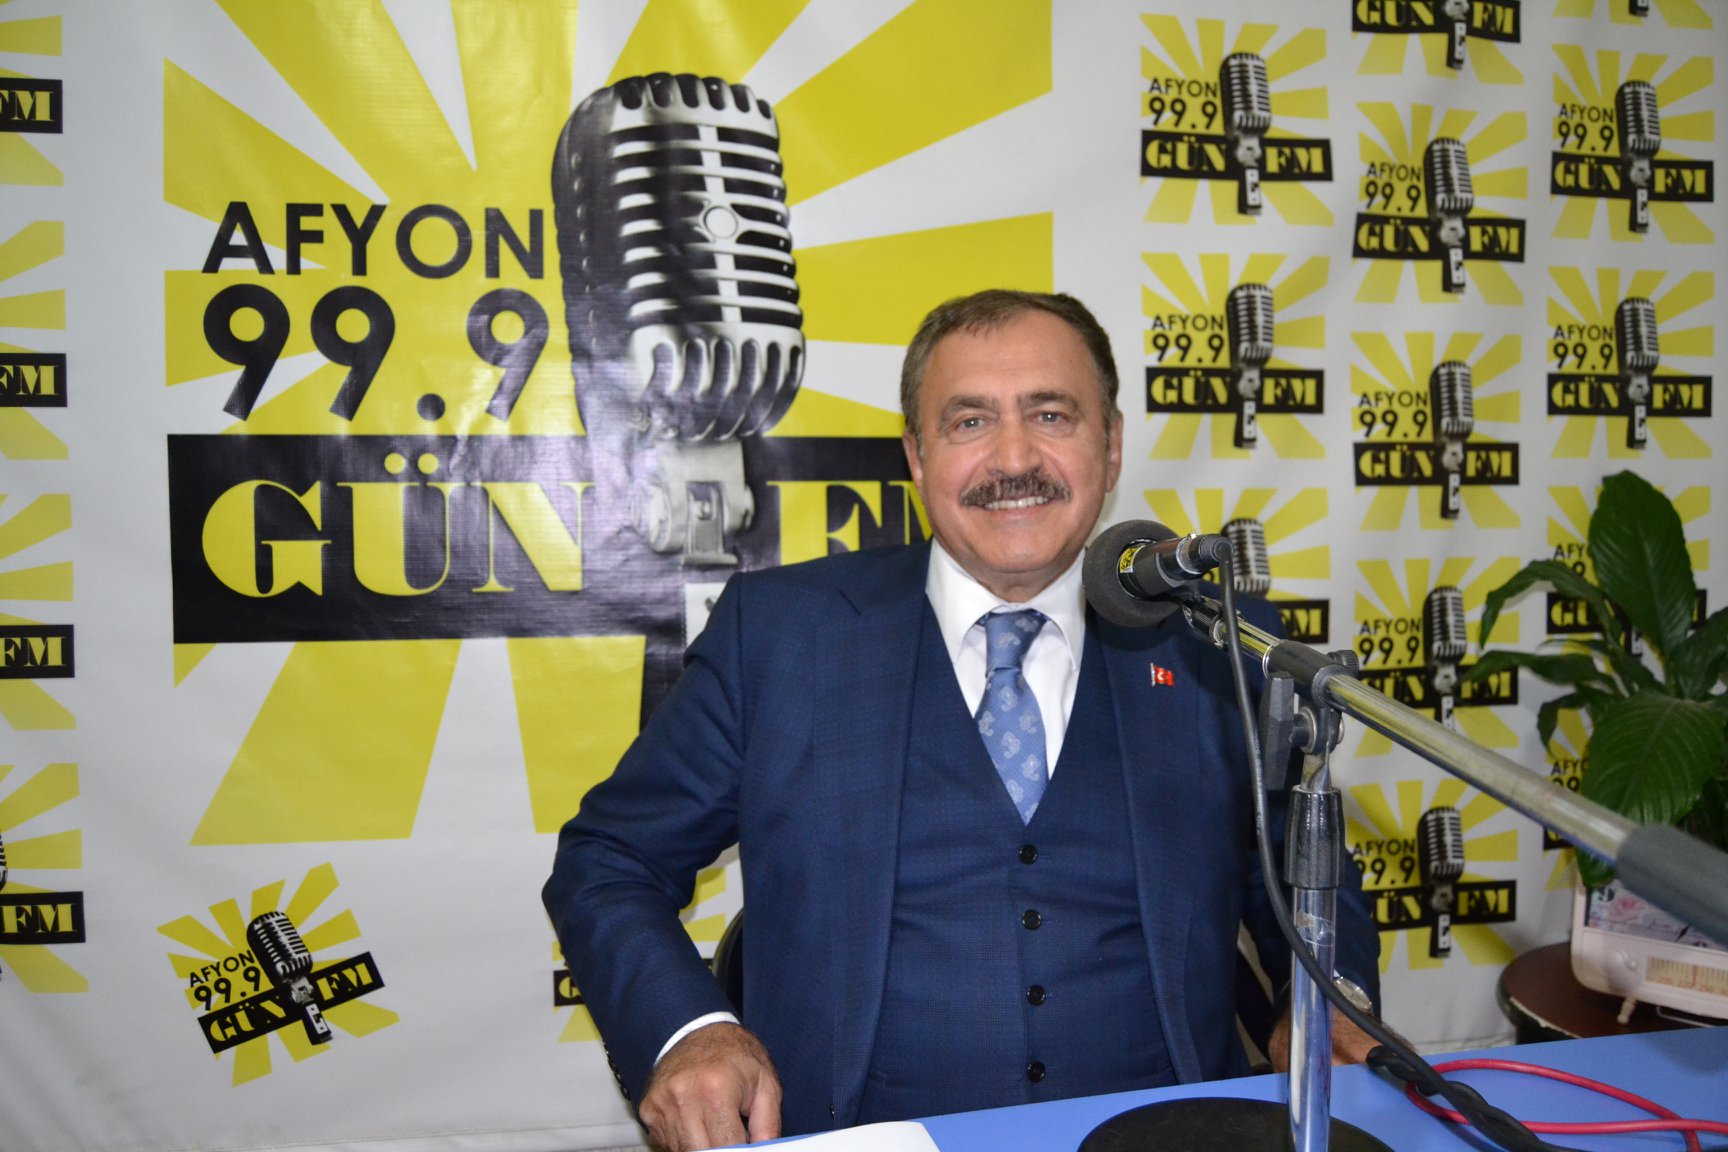 Eroğlu Gün FM'i kutladı